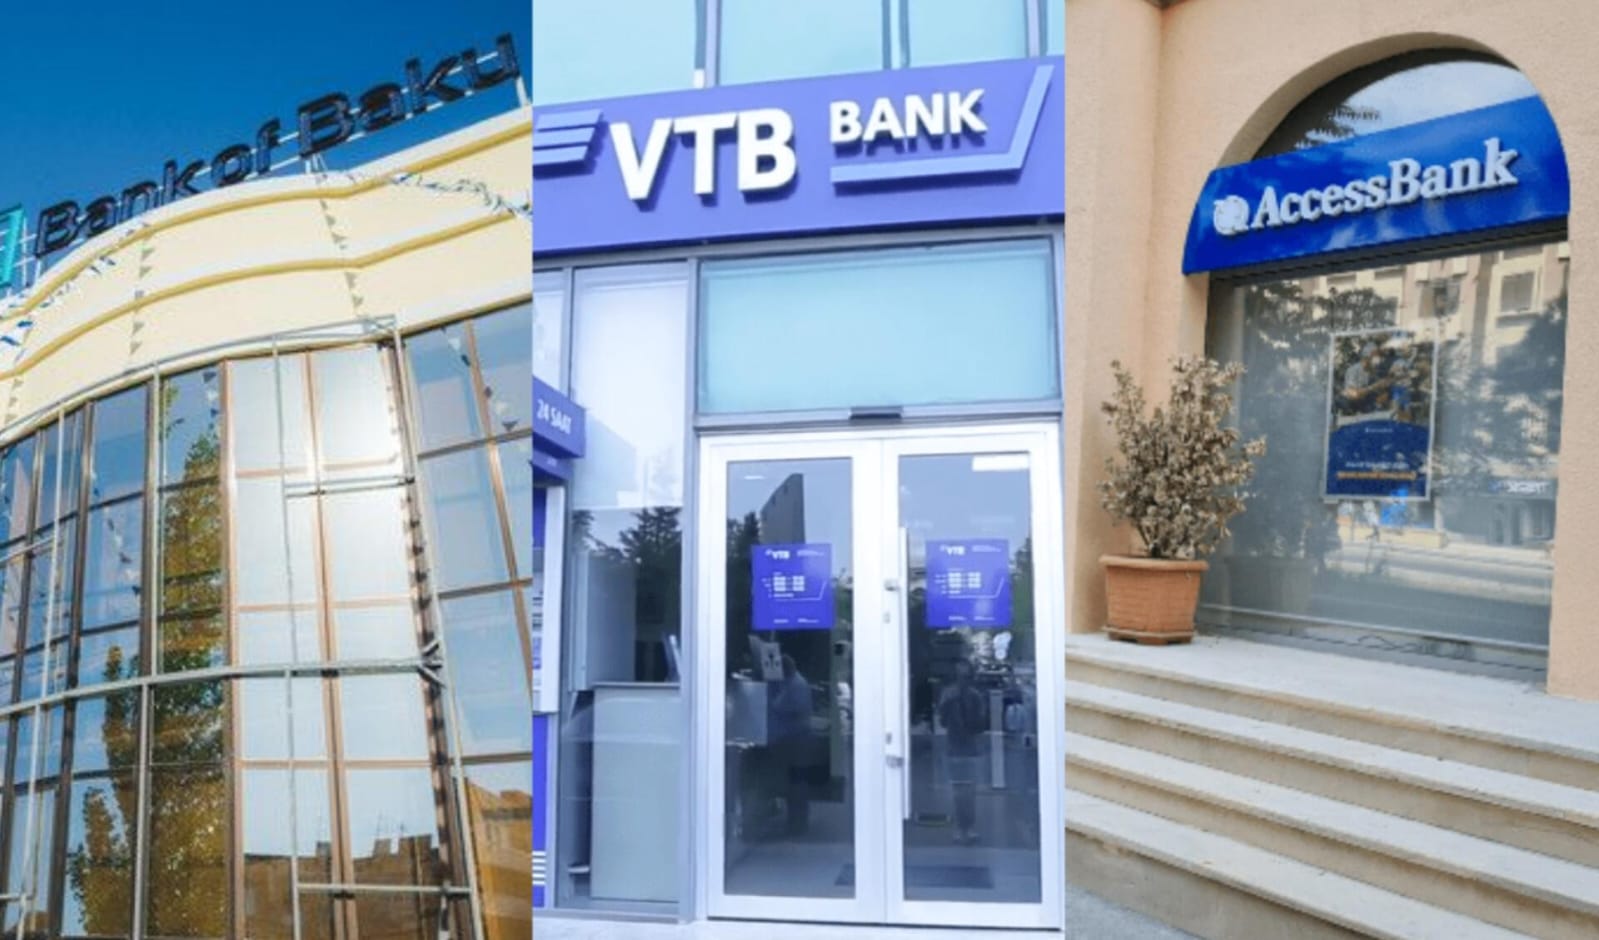 Ən çox şikayət edilən banklar: "Bank of Baku", "VTB", "Access" - RƏSMİ